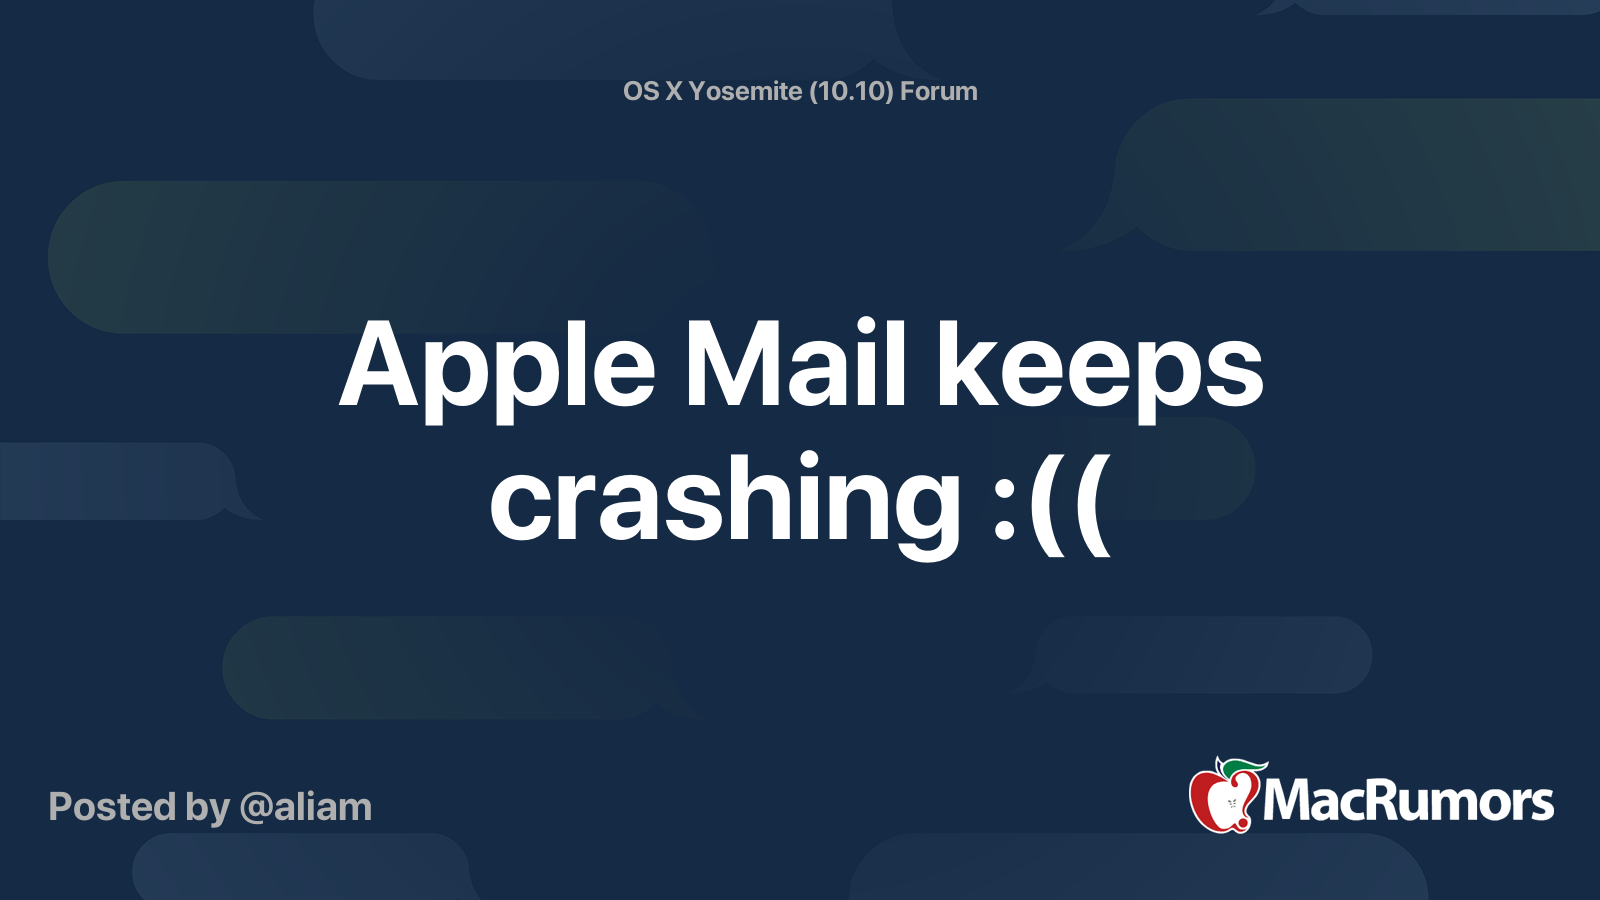 Apple Mail keeps crashing (( MacRumors Forums